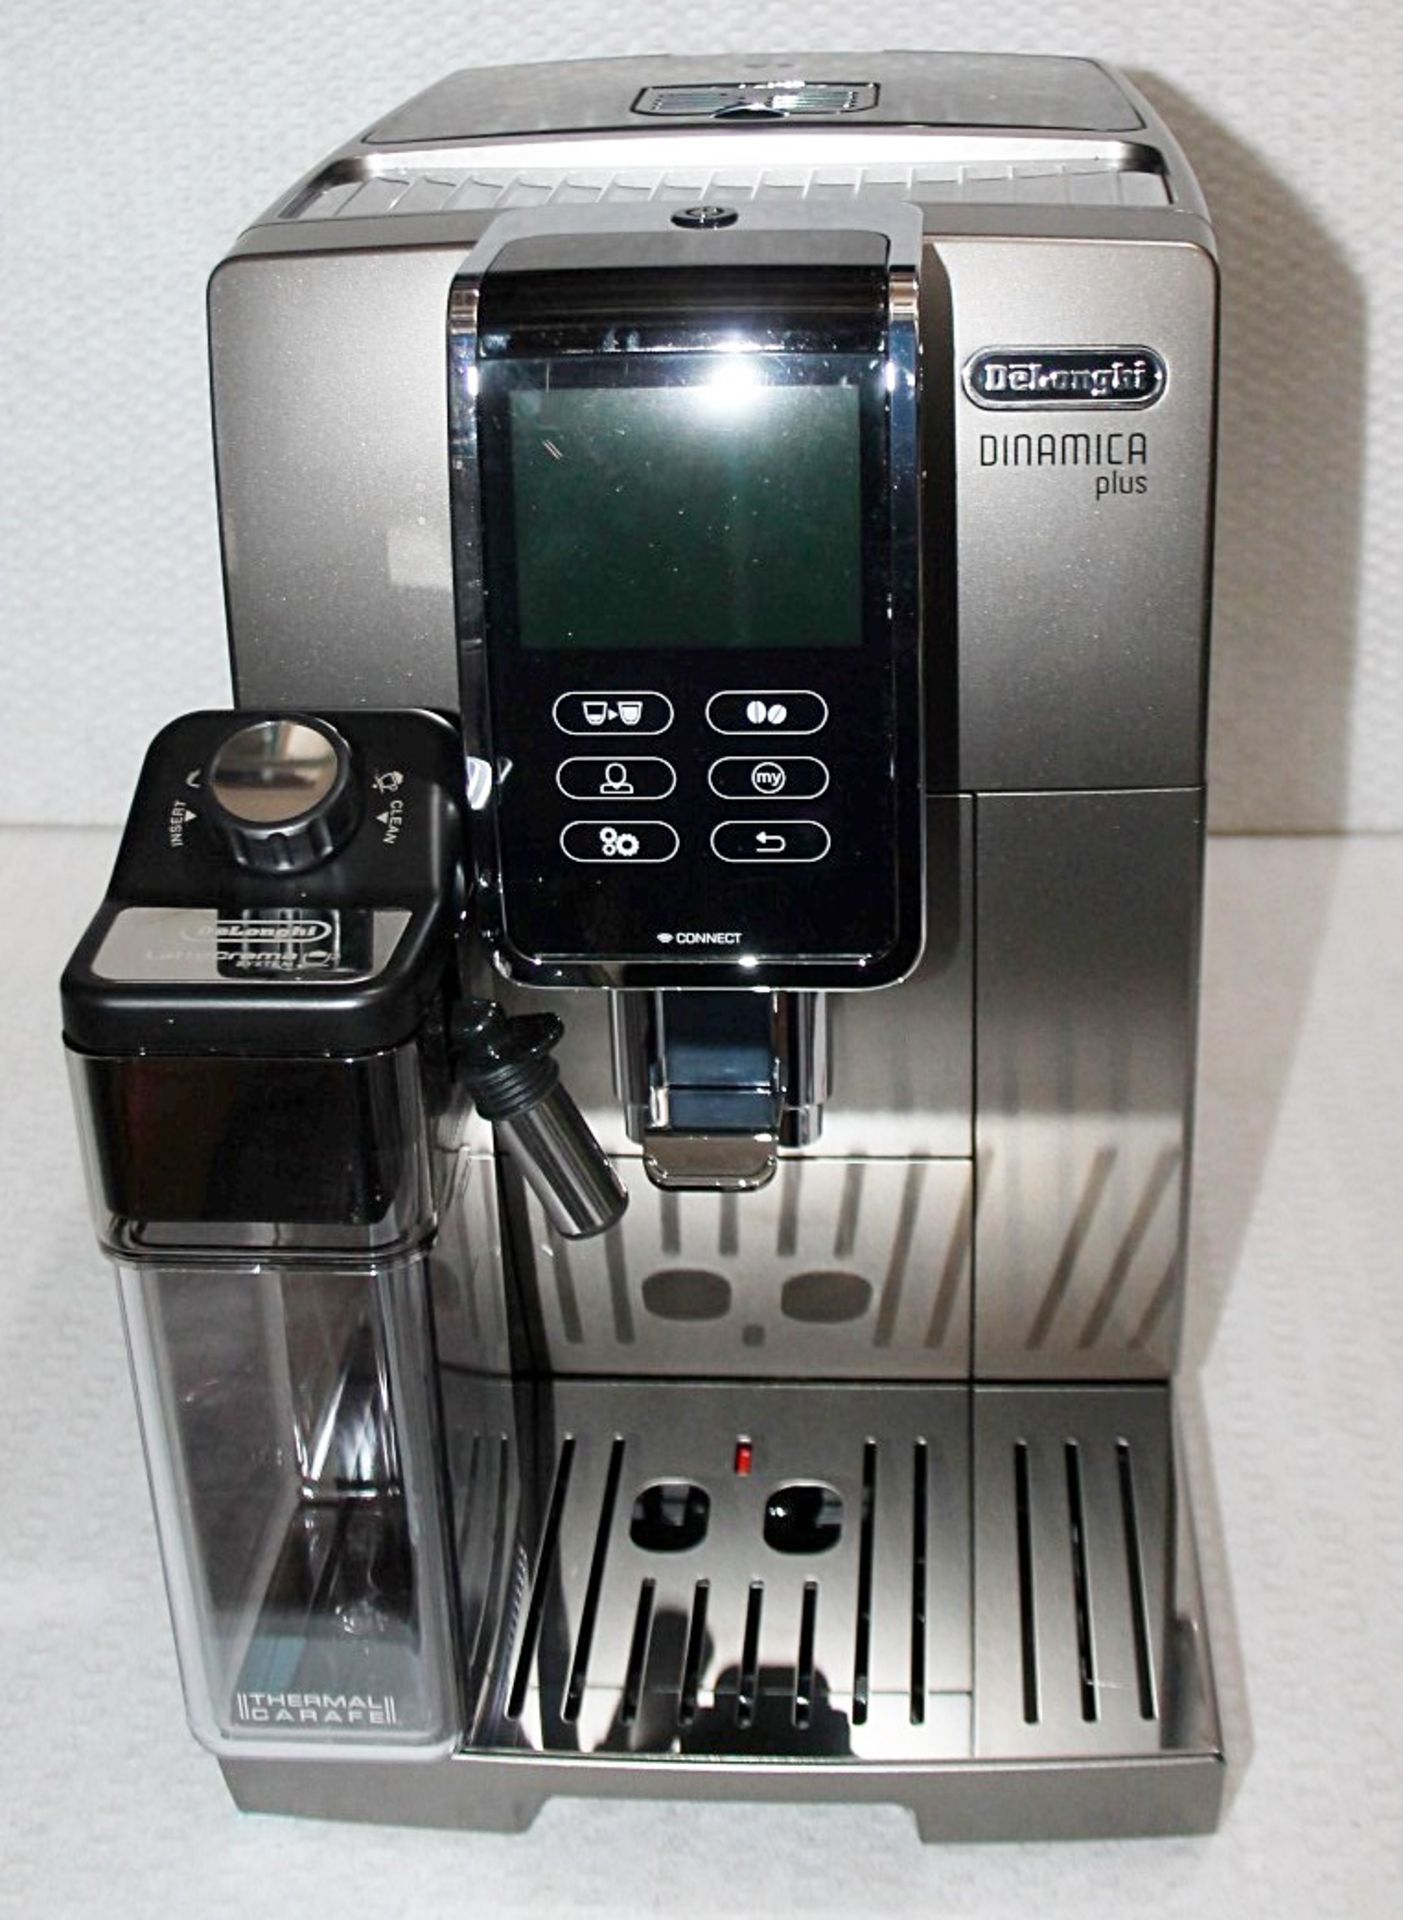 1 x DE'LONGHI 'Dinamica Plus' Coffee Machine - Original Price £1,199 - Unused Boxed Stock - Image 4 of 13